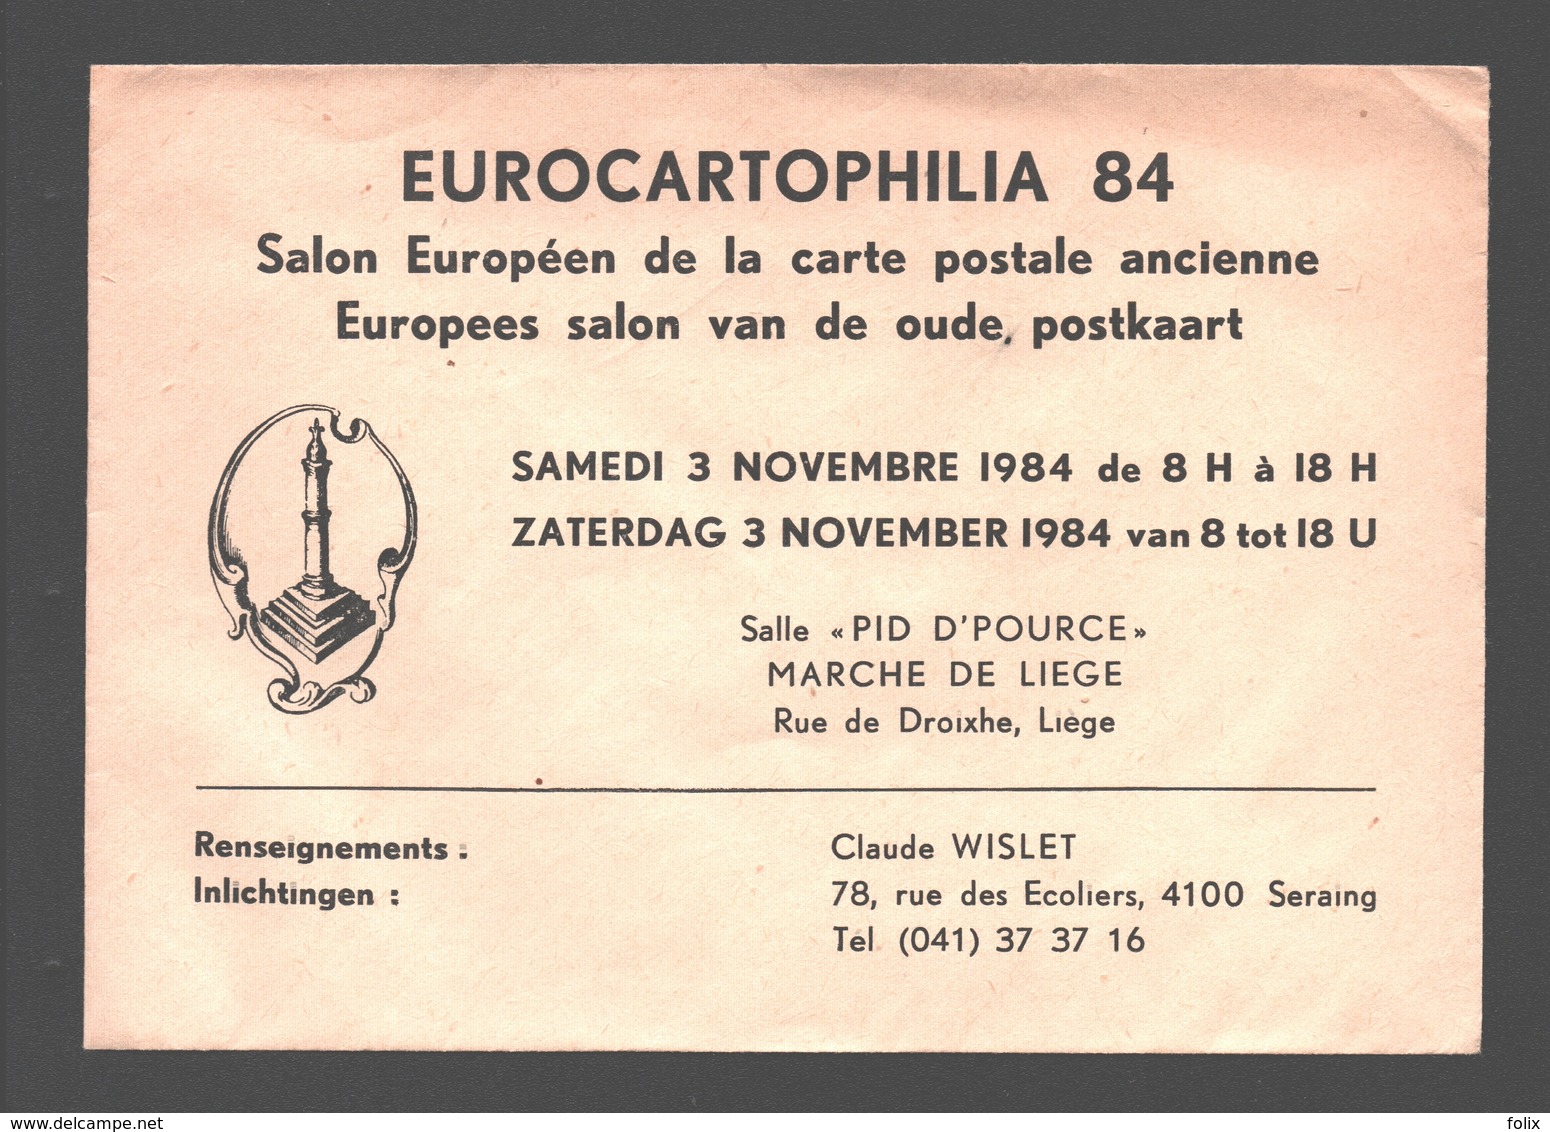 Cartophilie - Envelop/ Enveloppe Publicitaire - Eurocartophilia 84 - Liège - Salon Européen De La Carte Postale Ancienne - Bourses & Salons De Collections